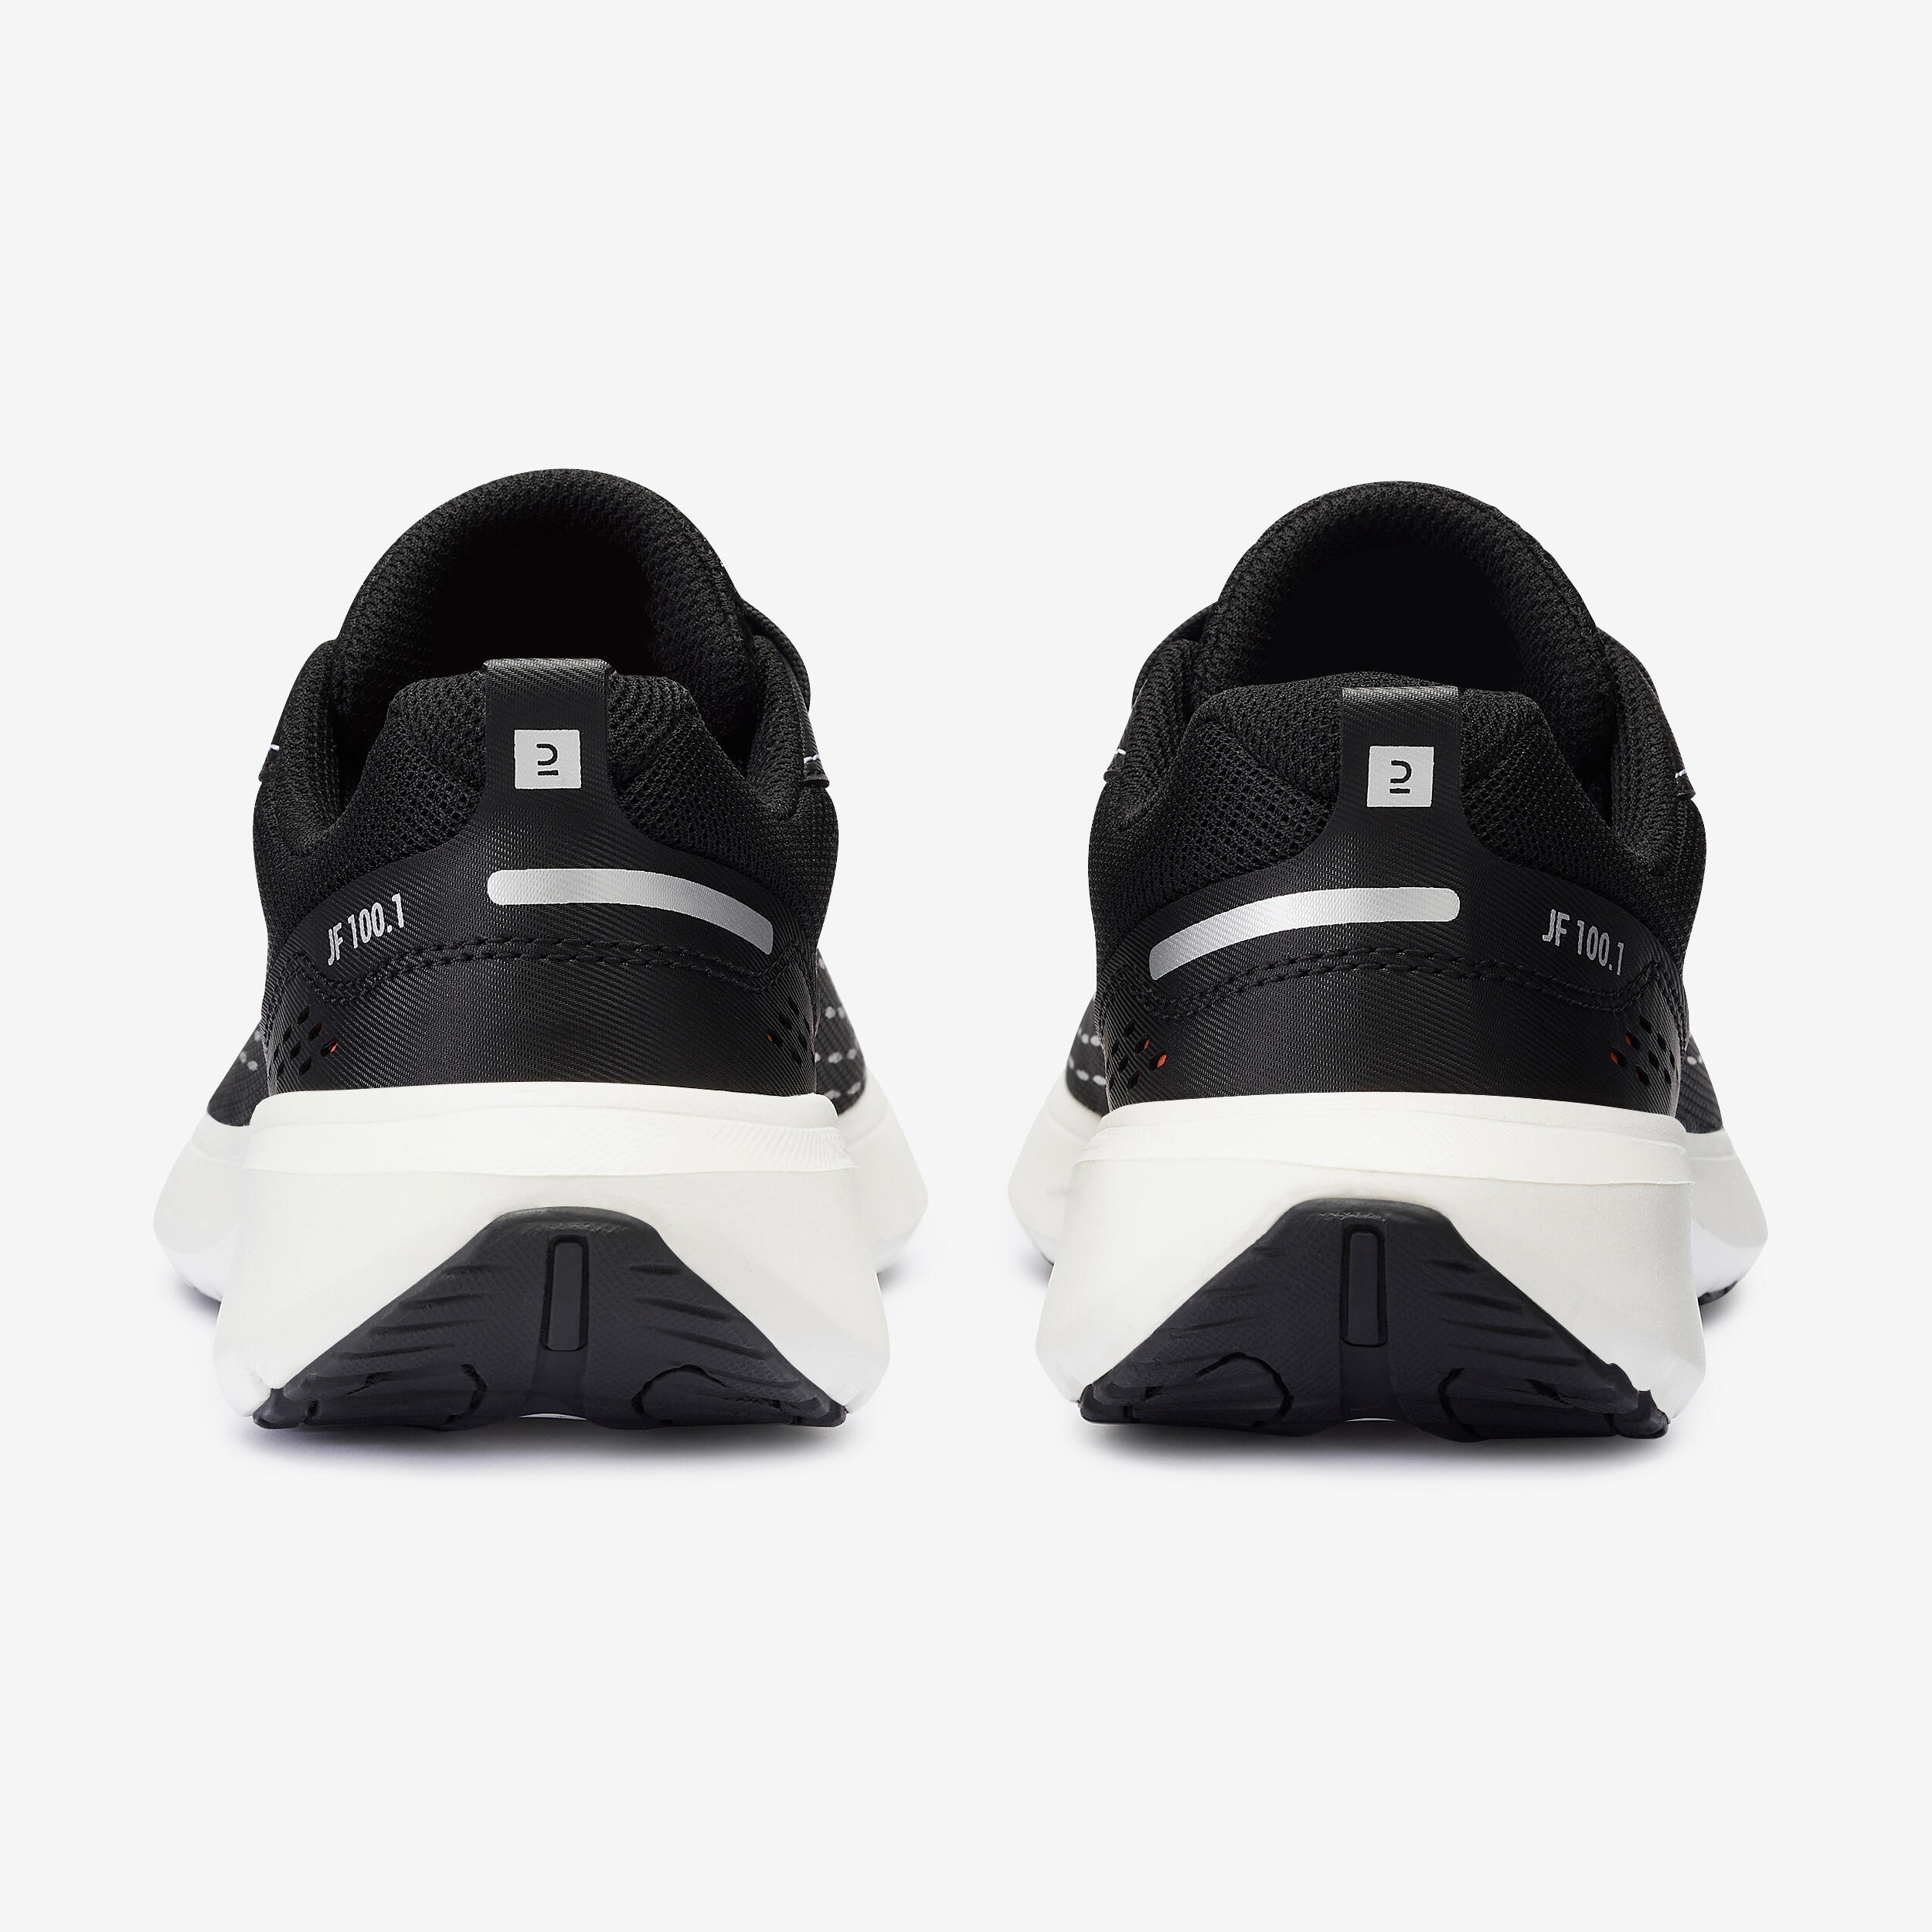 Chaussures de course pour femme – Jogflow 100.1 noir - KALENJI